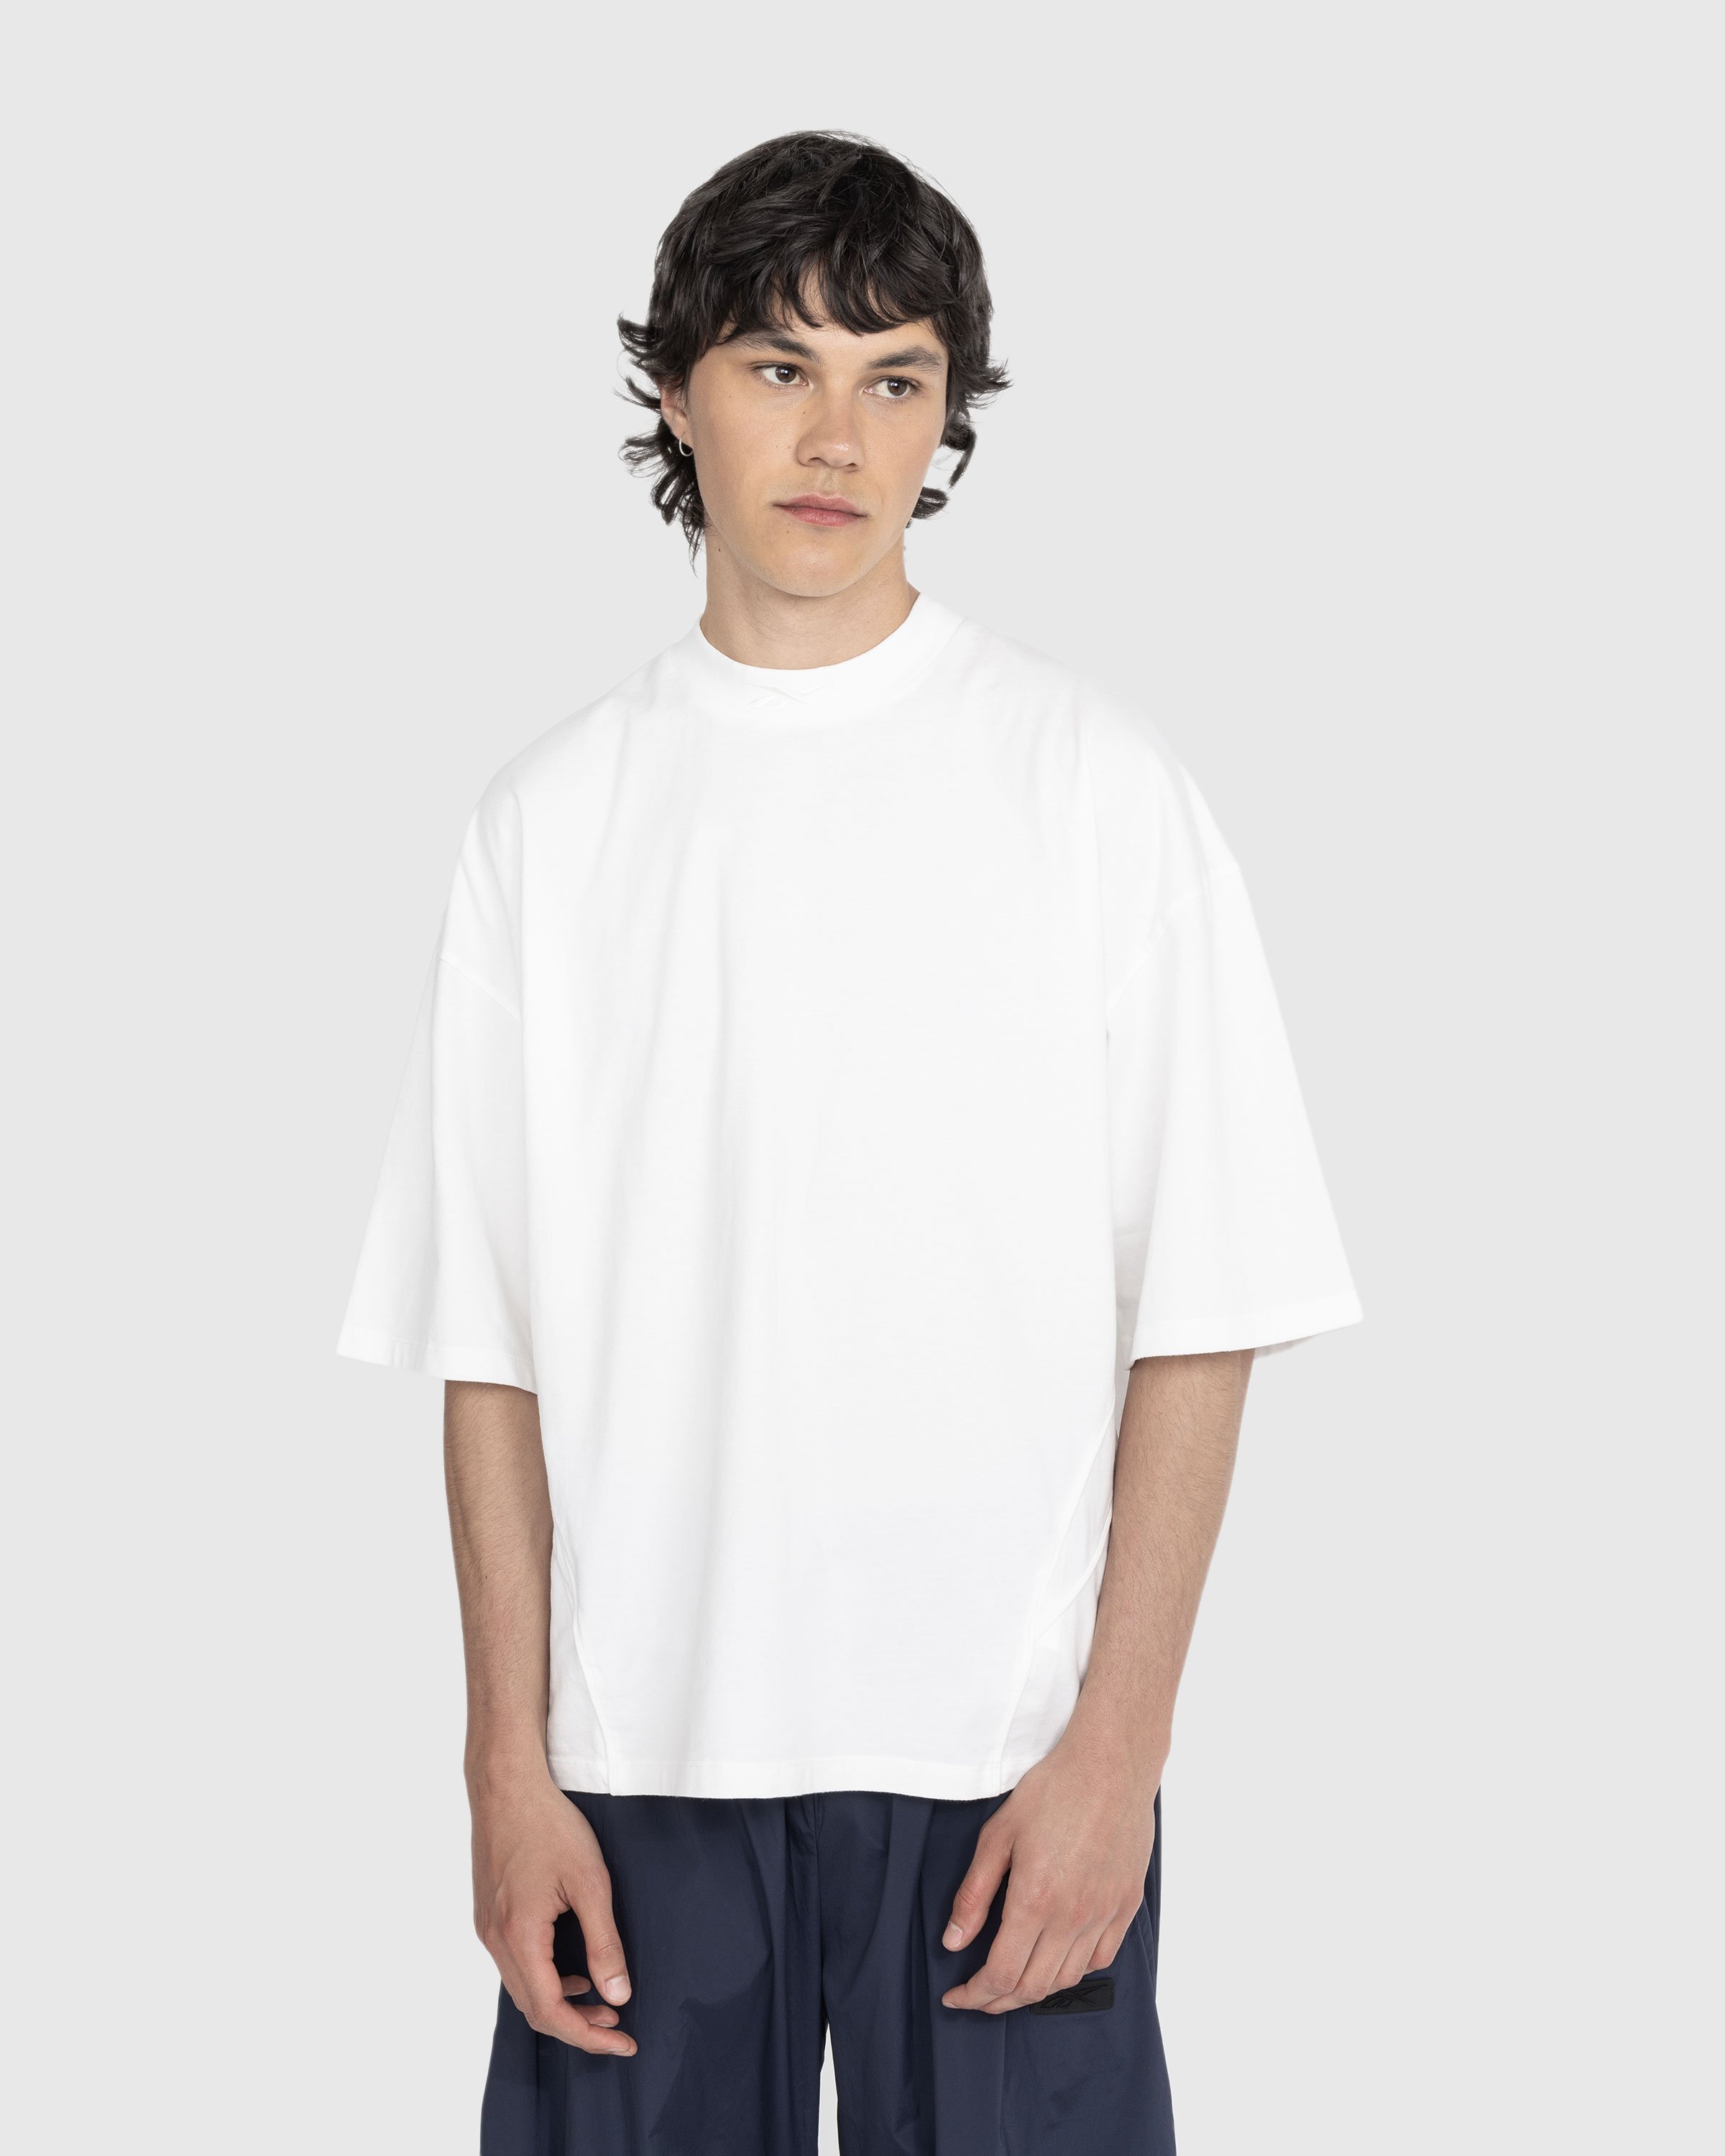 Reebok - Piped T-Shirt Bones - Clothing - White - Image 2